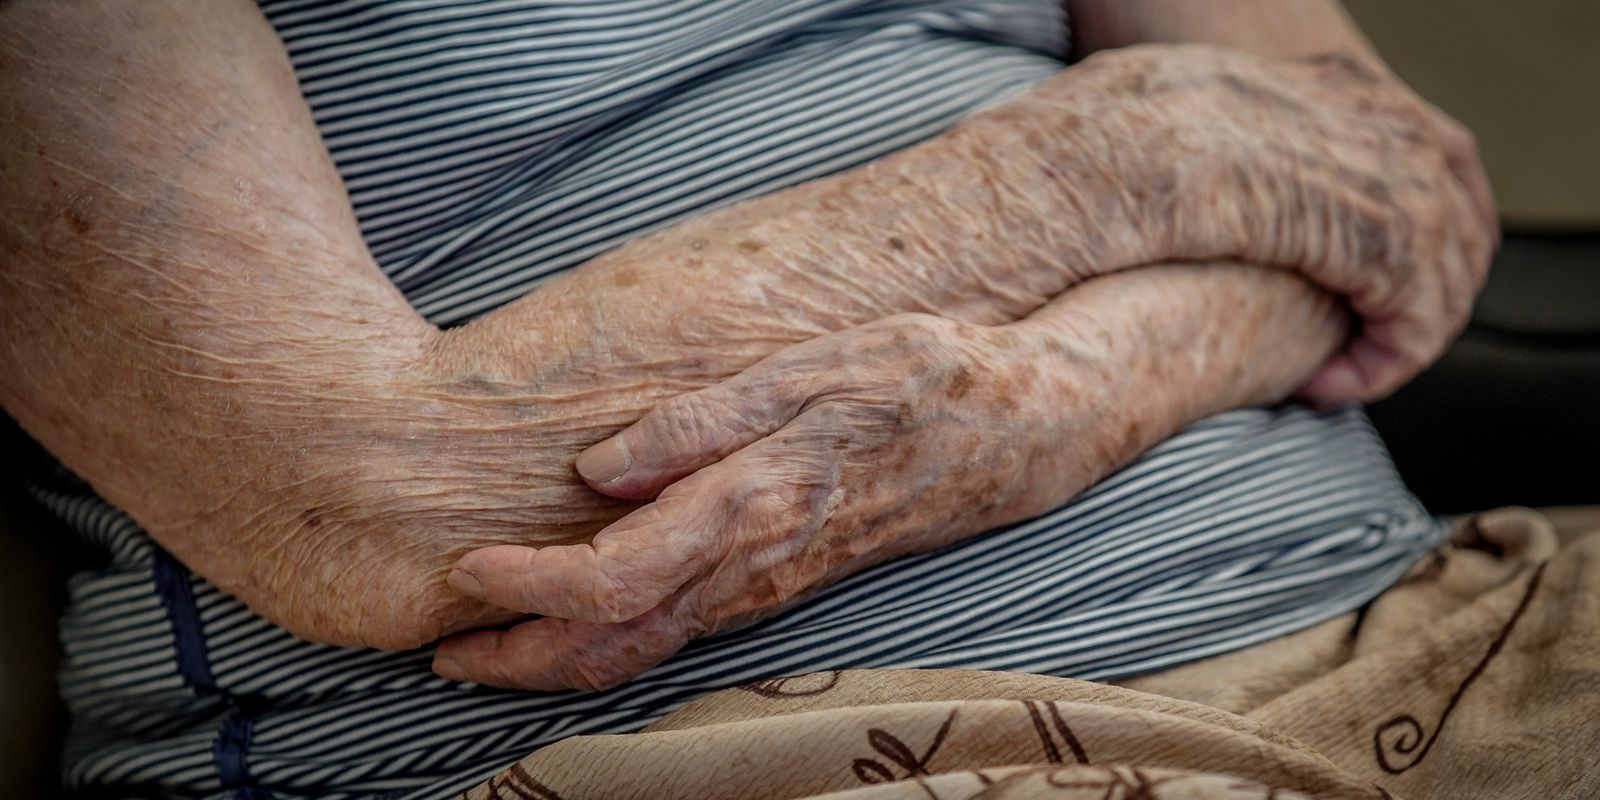 Envelhecimento da população vai demandar mais vacinas para idosos